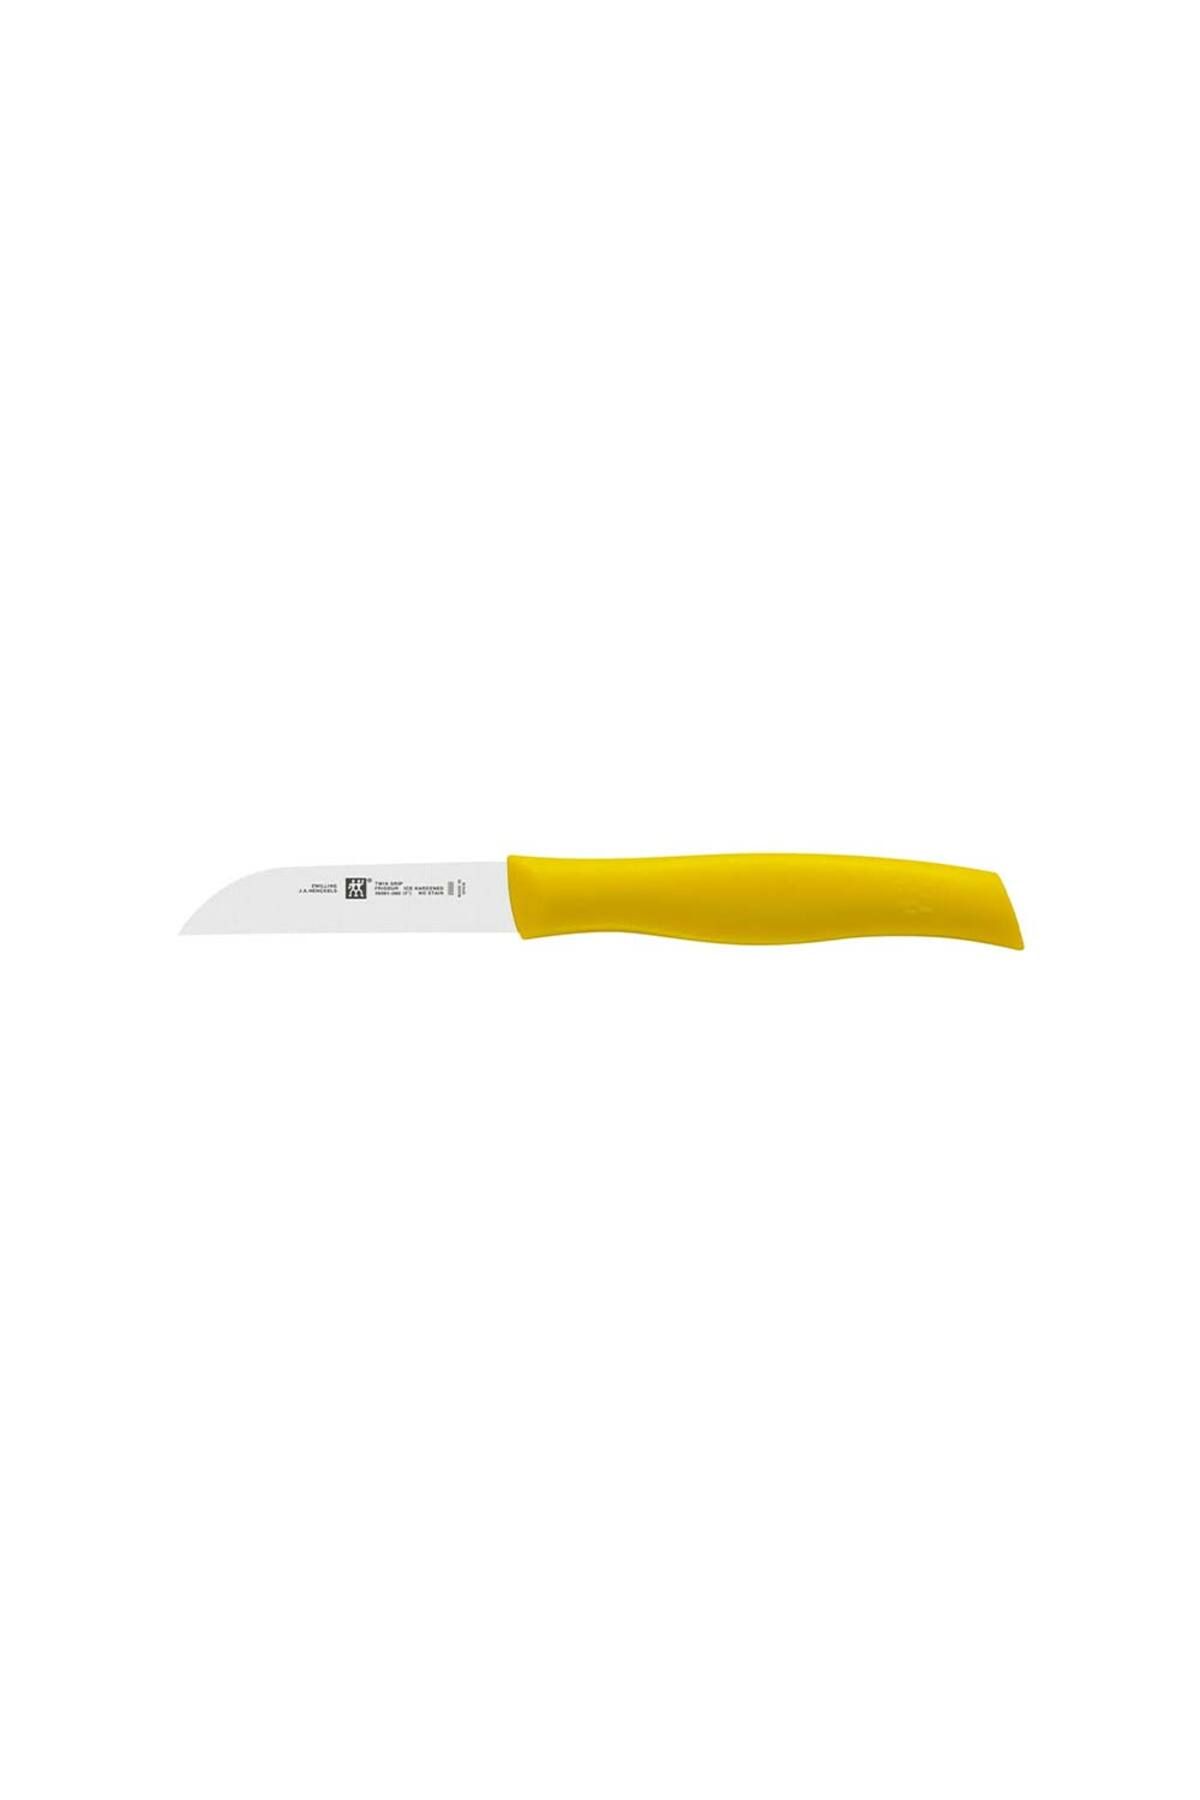 Zwilling 380910810 Sebze Meyve Bıçağı, Sarı